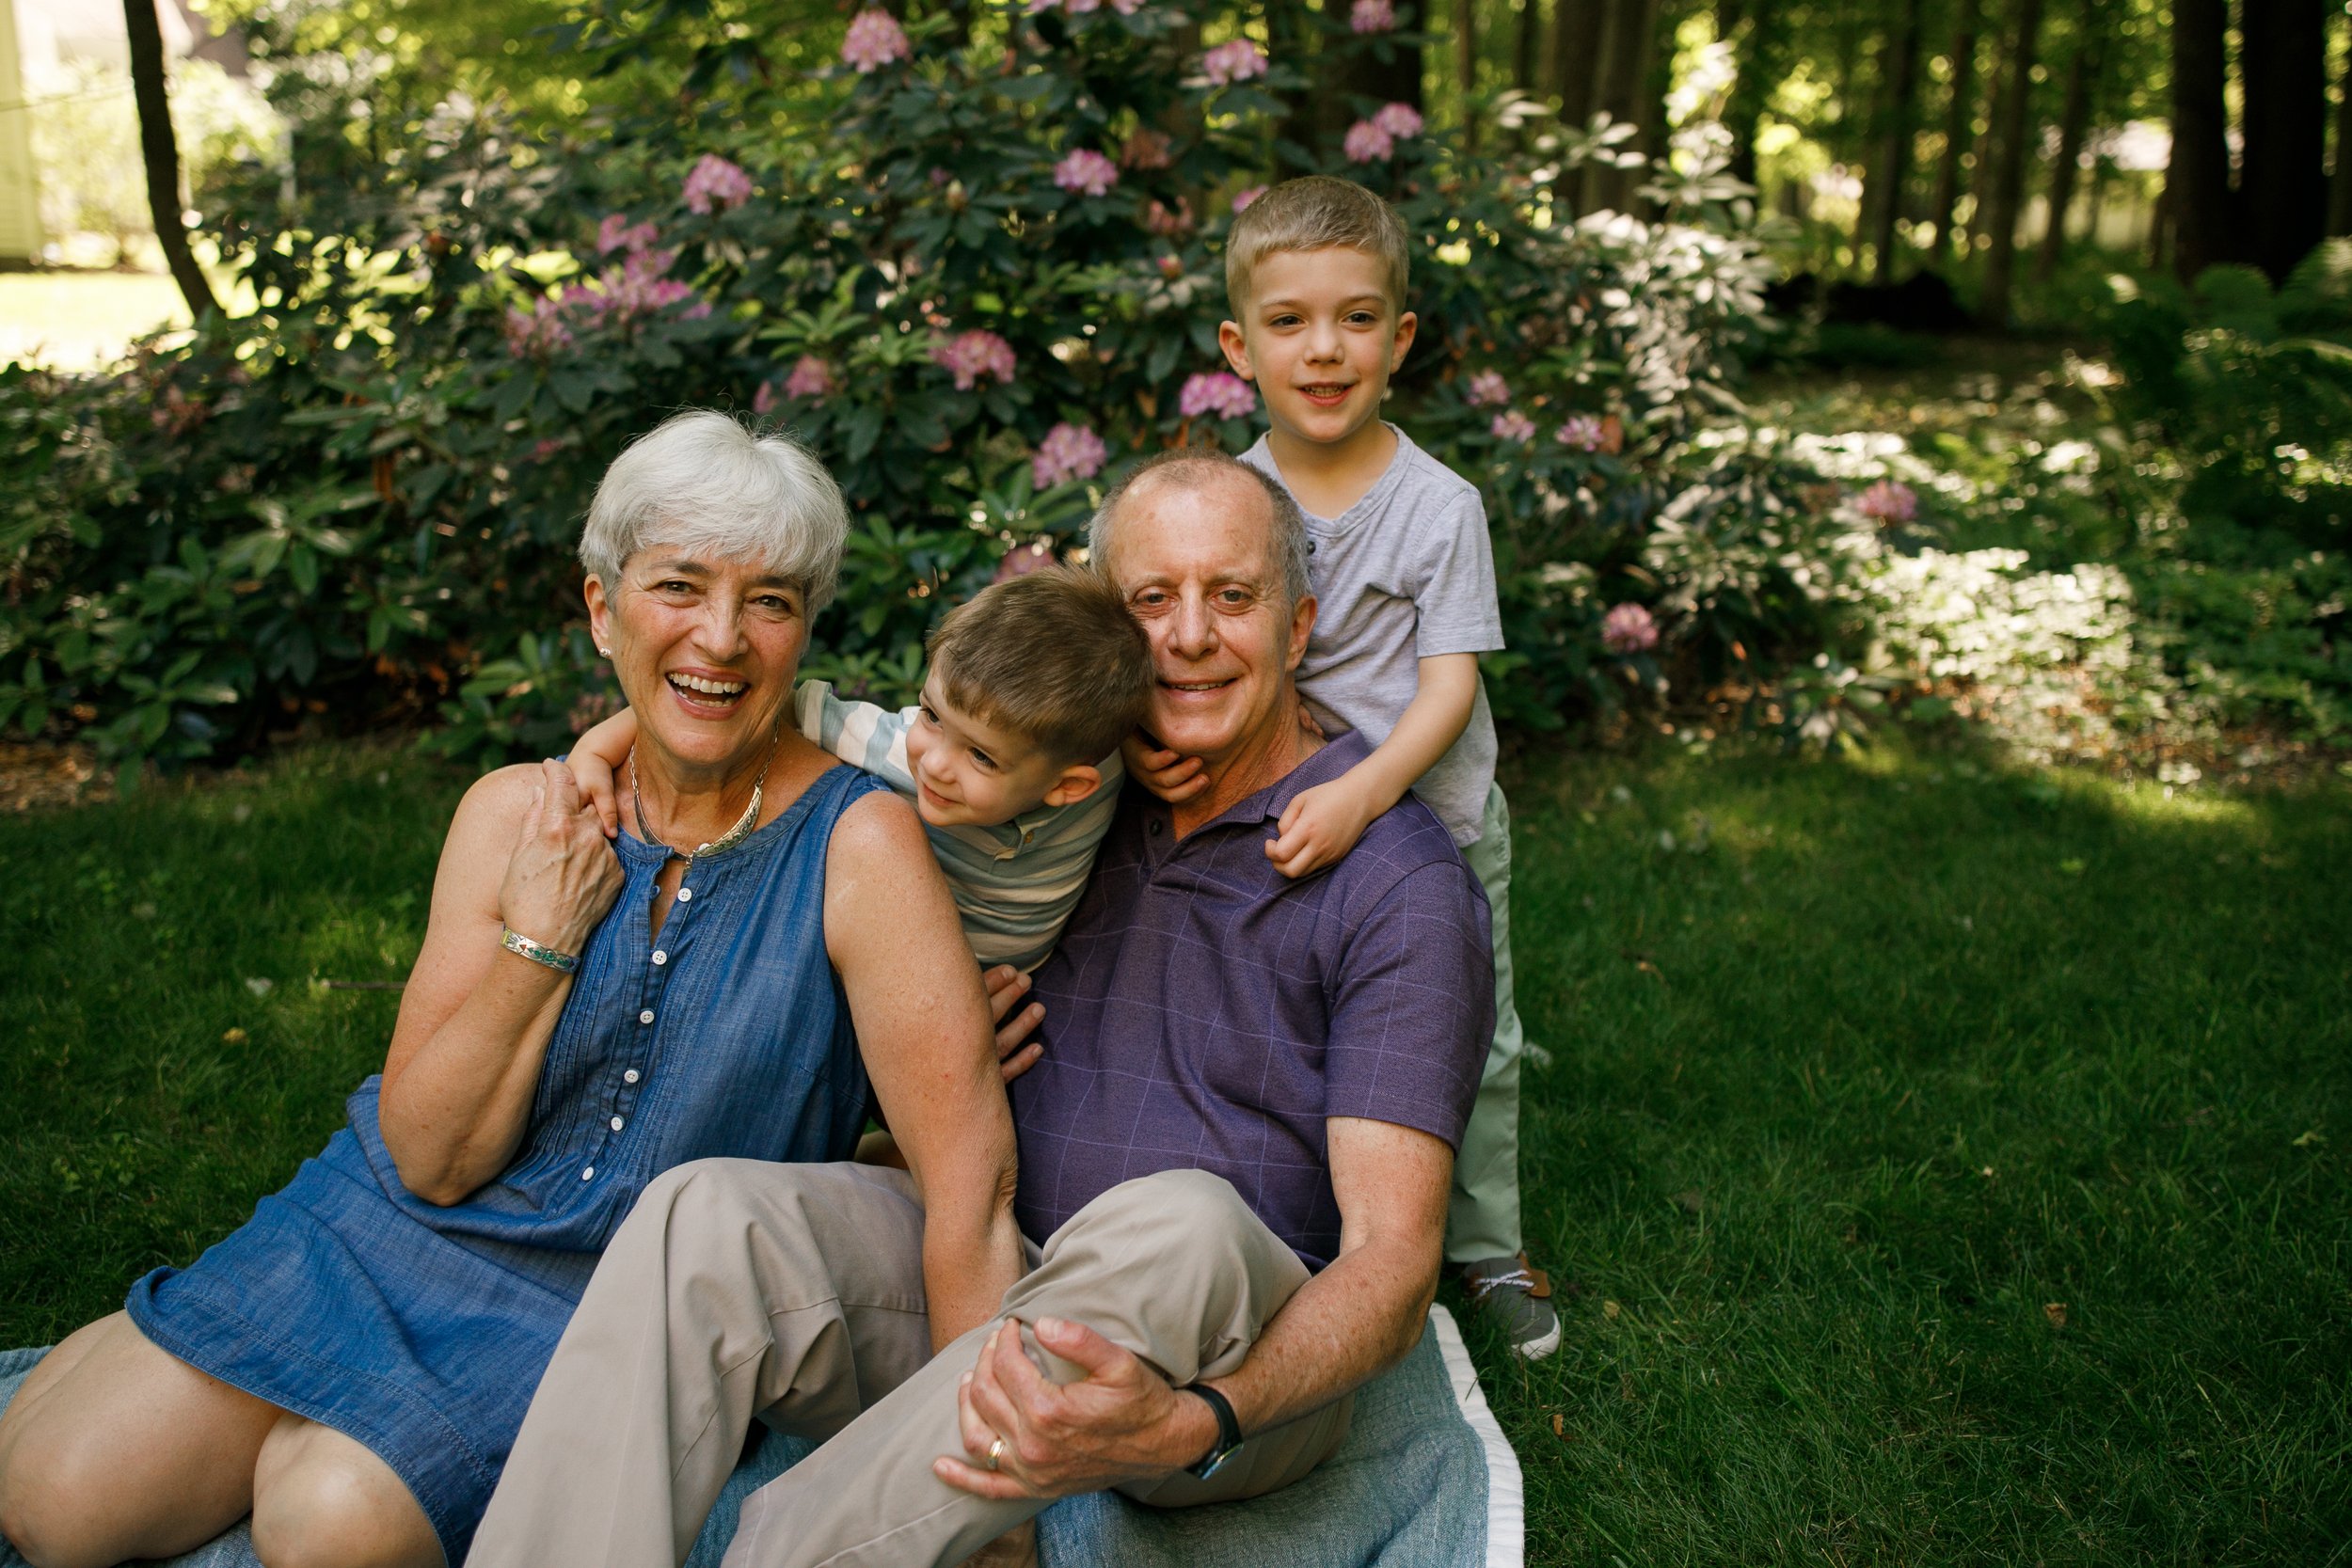 Grand Rapids Family Photographer - Extended Family Photographer - Ada Family Photographer - Lifestyle Family Photographer - Hughes Family  - J Darling Photo 177.jpg